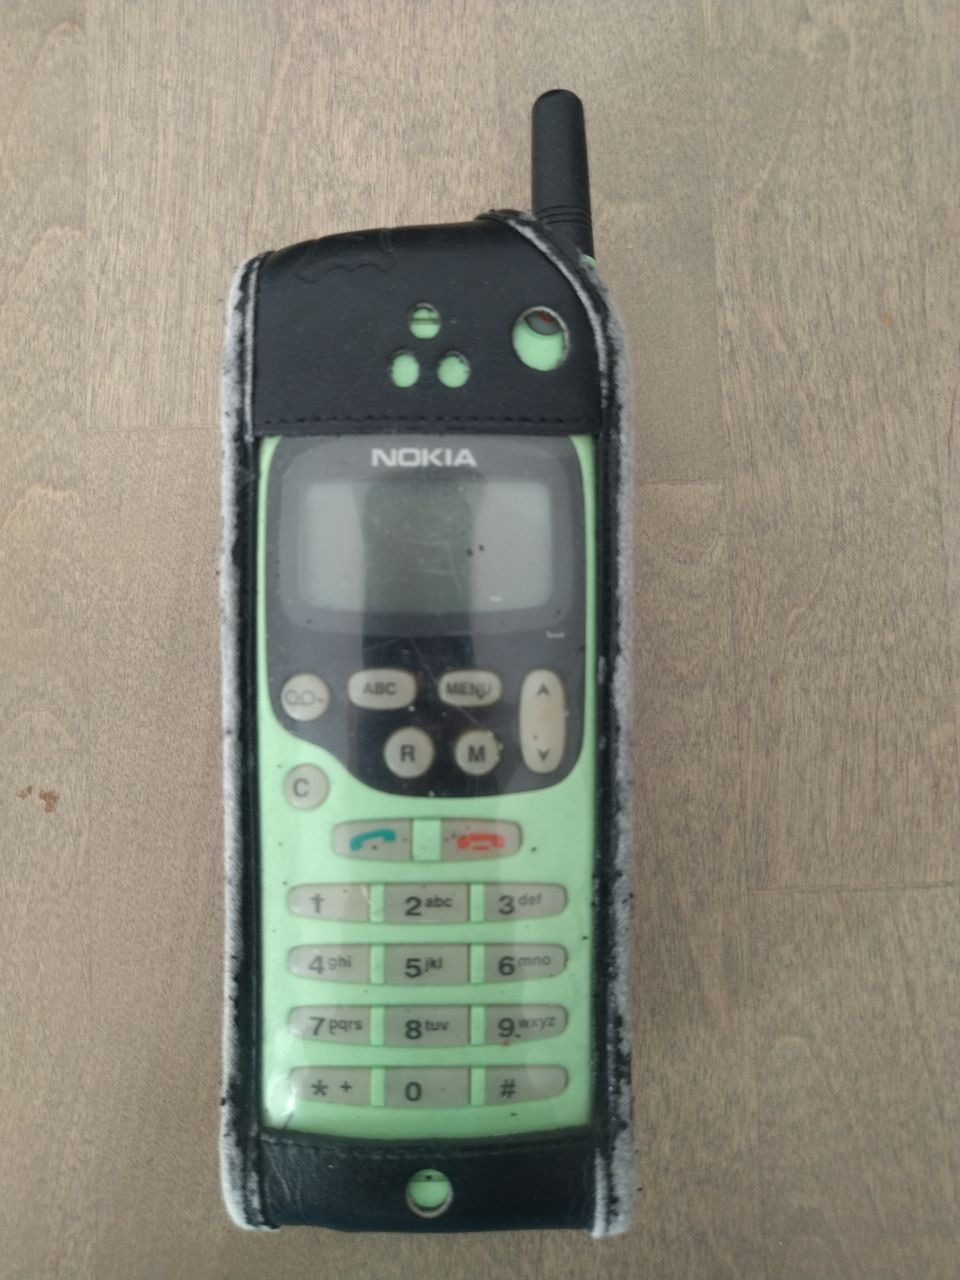 Nokia 1610